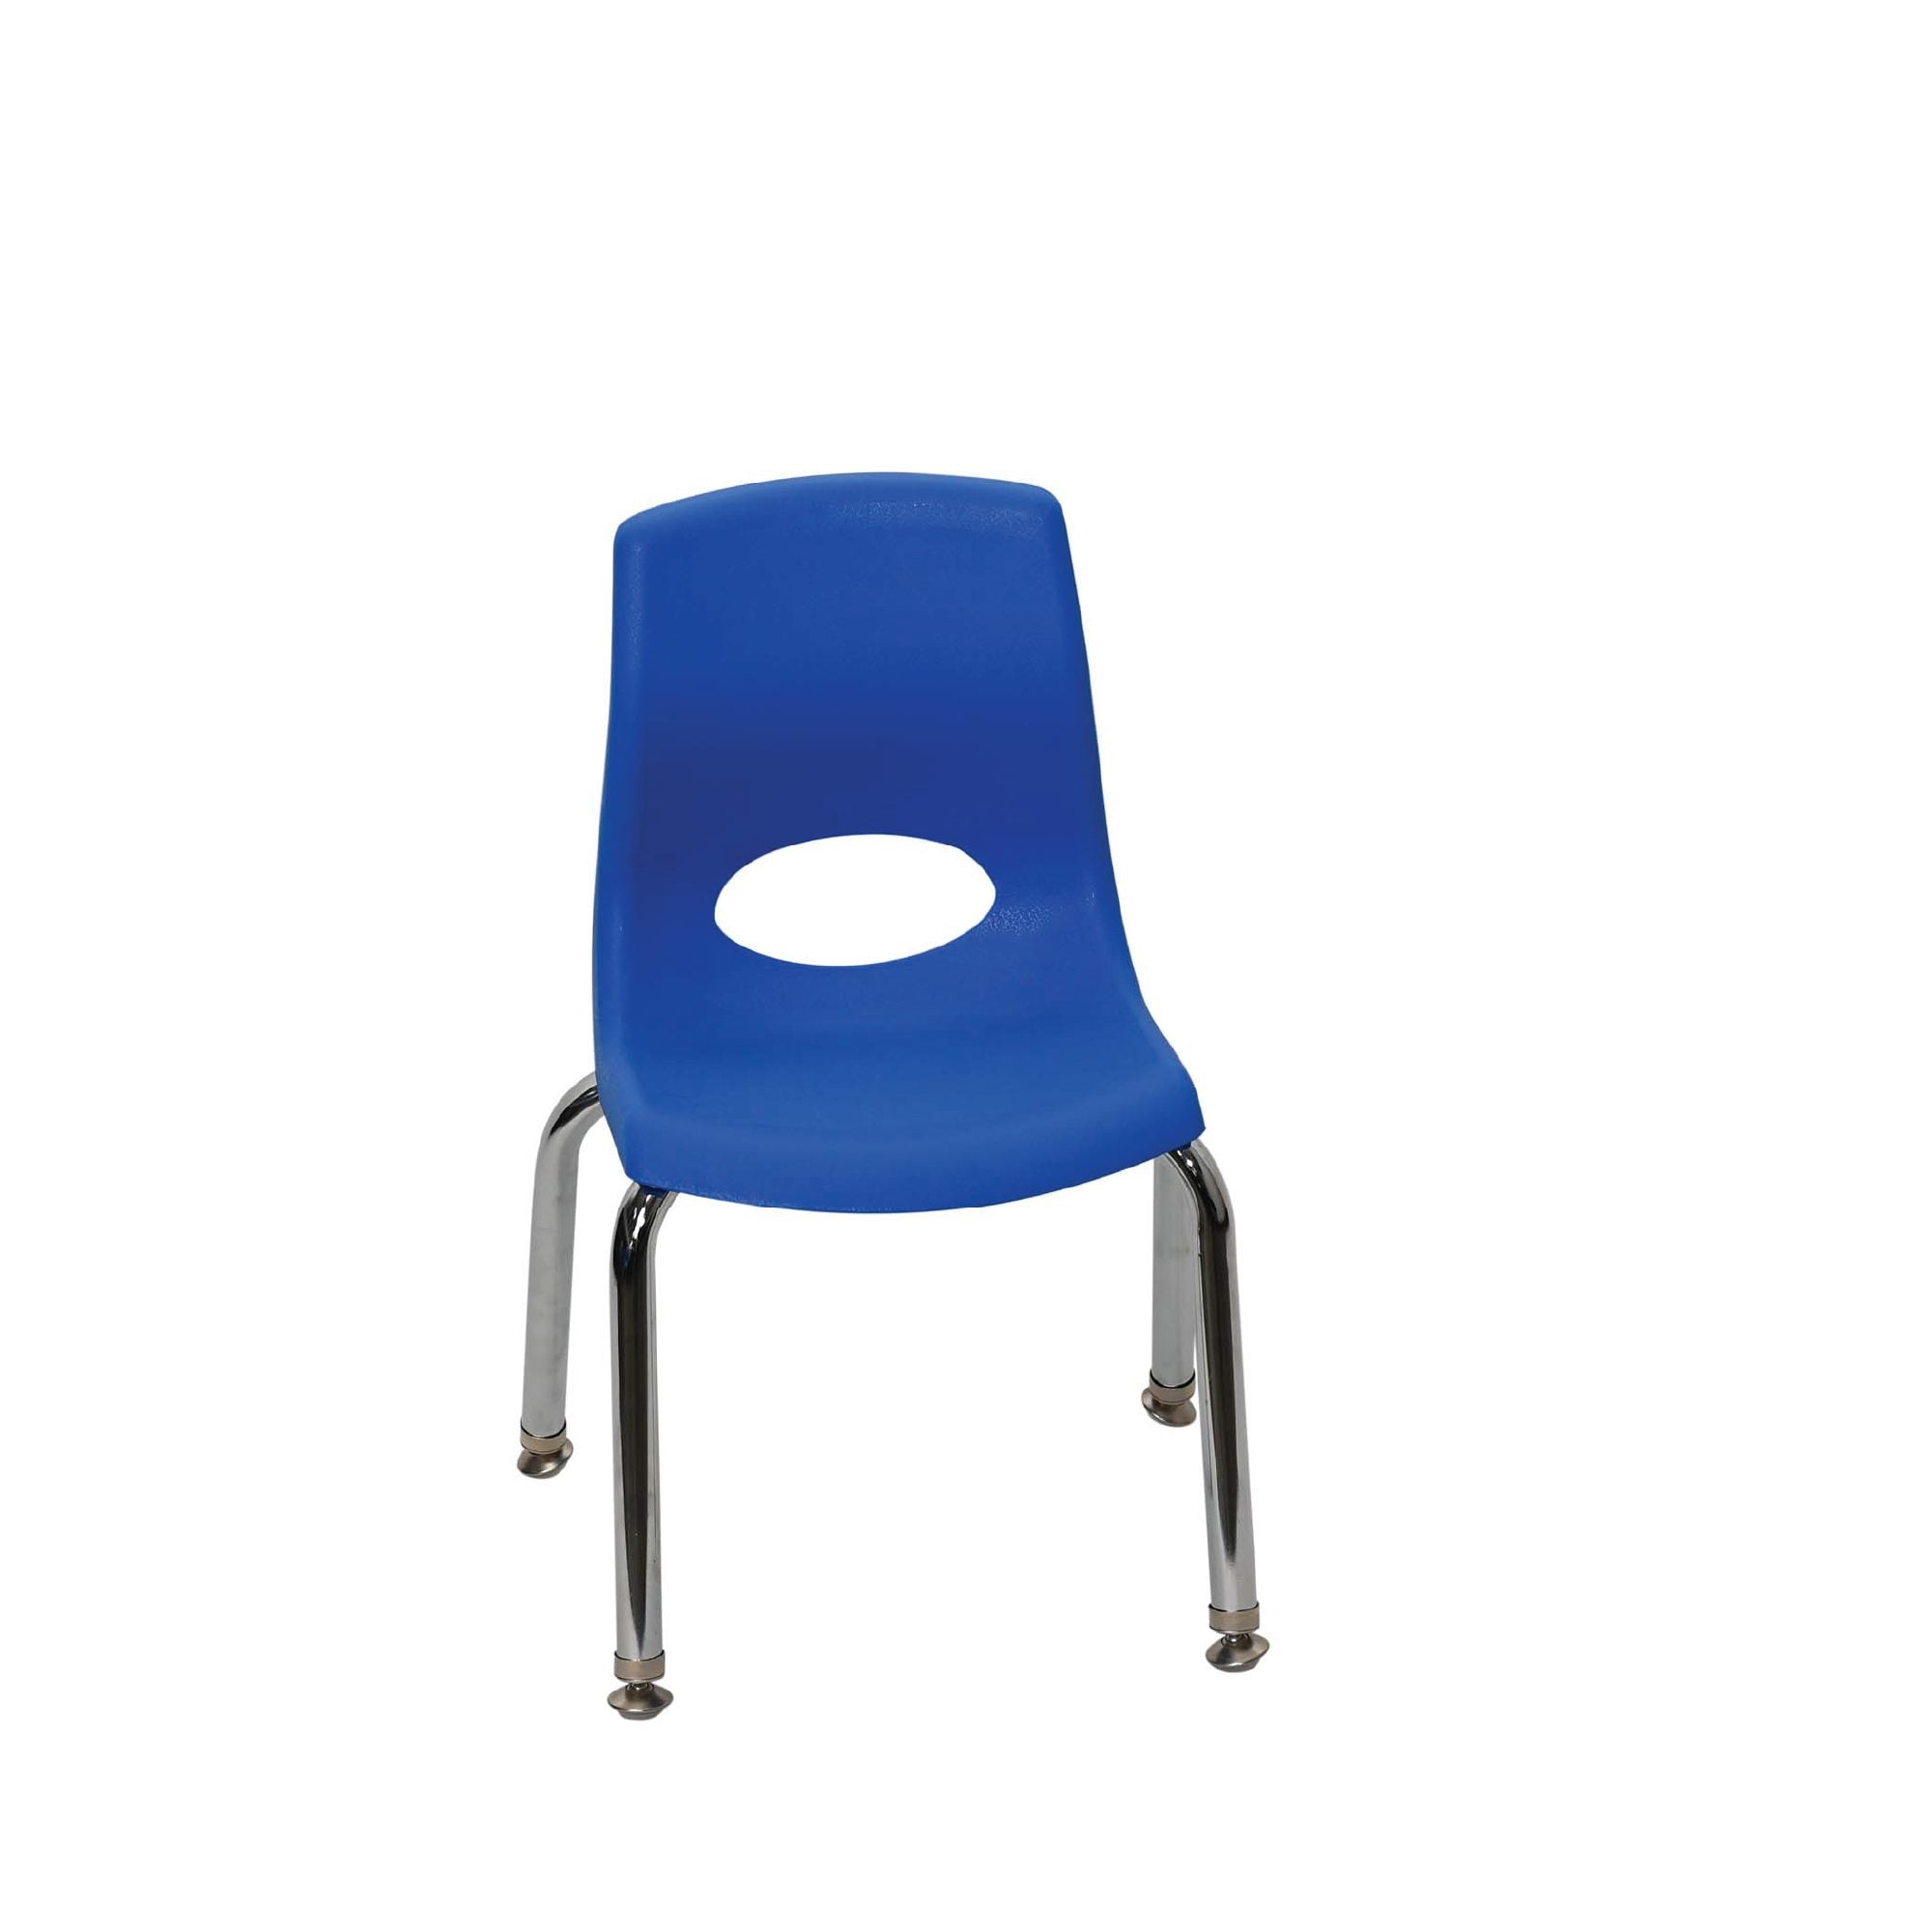 10″ MyPosture™ Chair – Blue, Chrome Legs